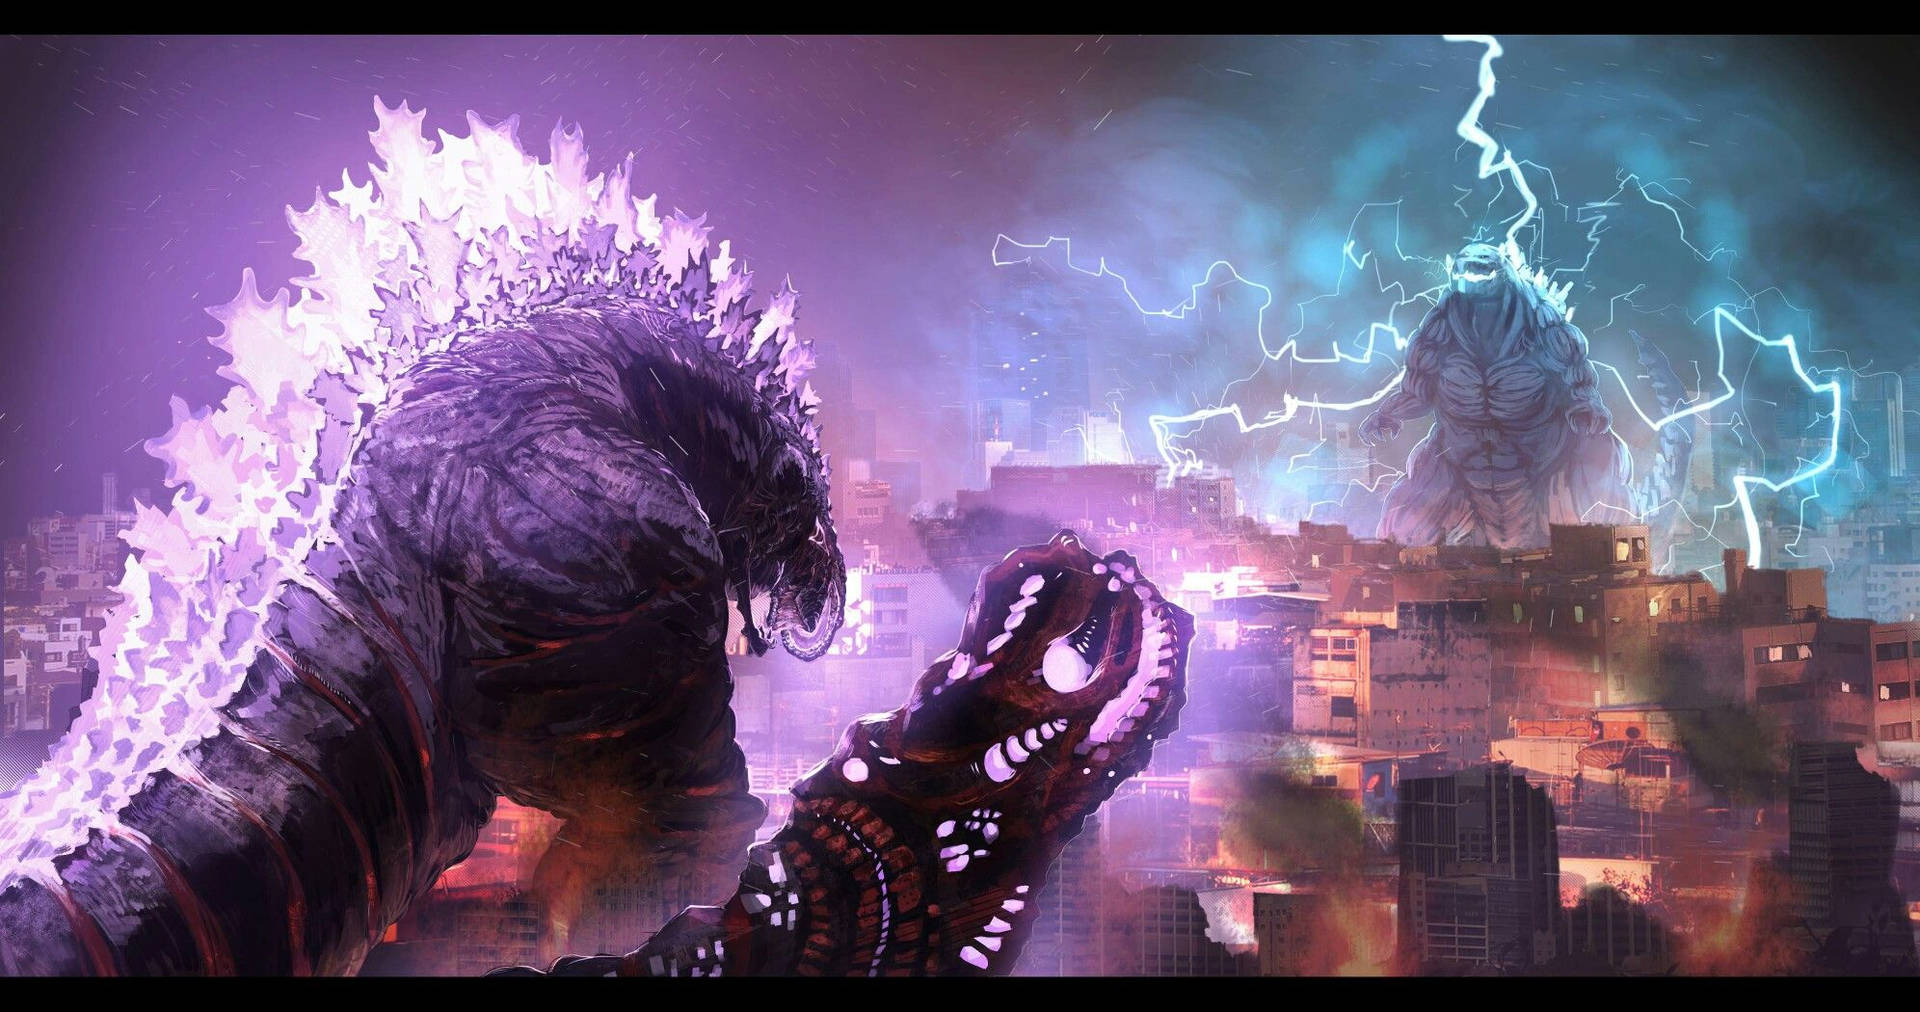 Fight off Godzilla's newest form - Shin Godzilla Wallpaper